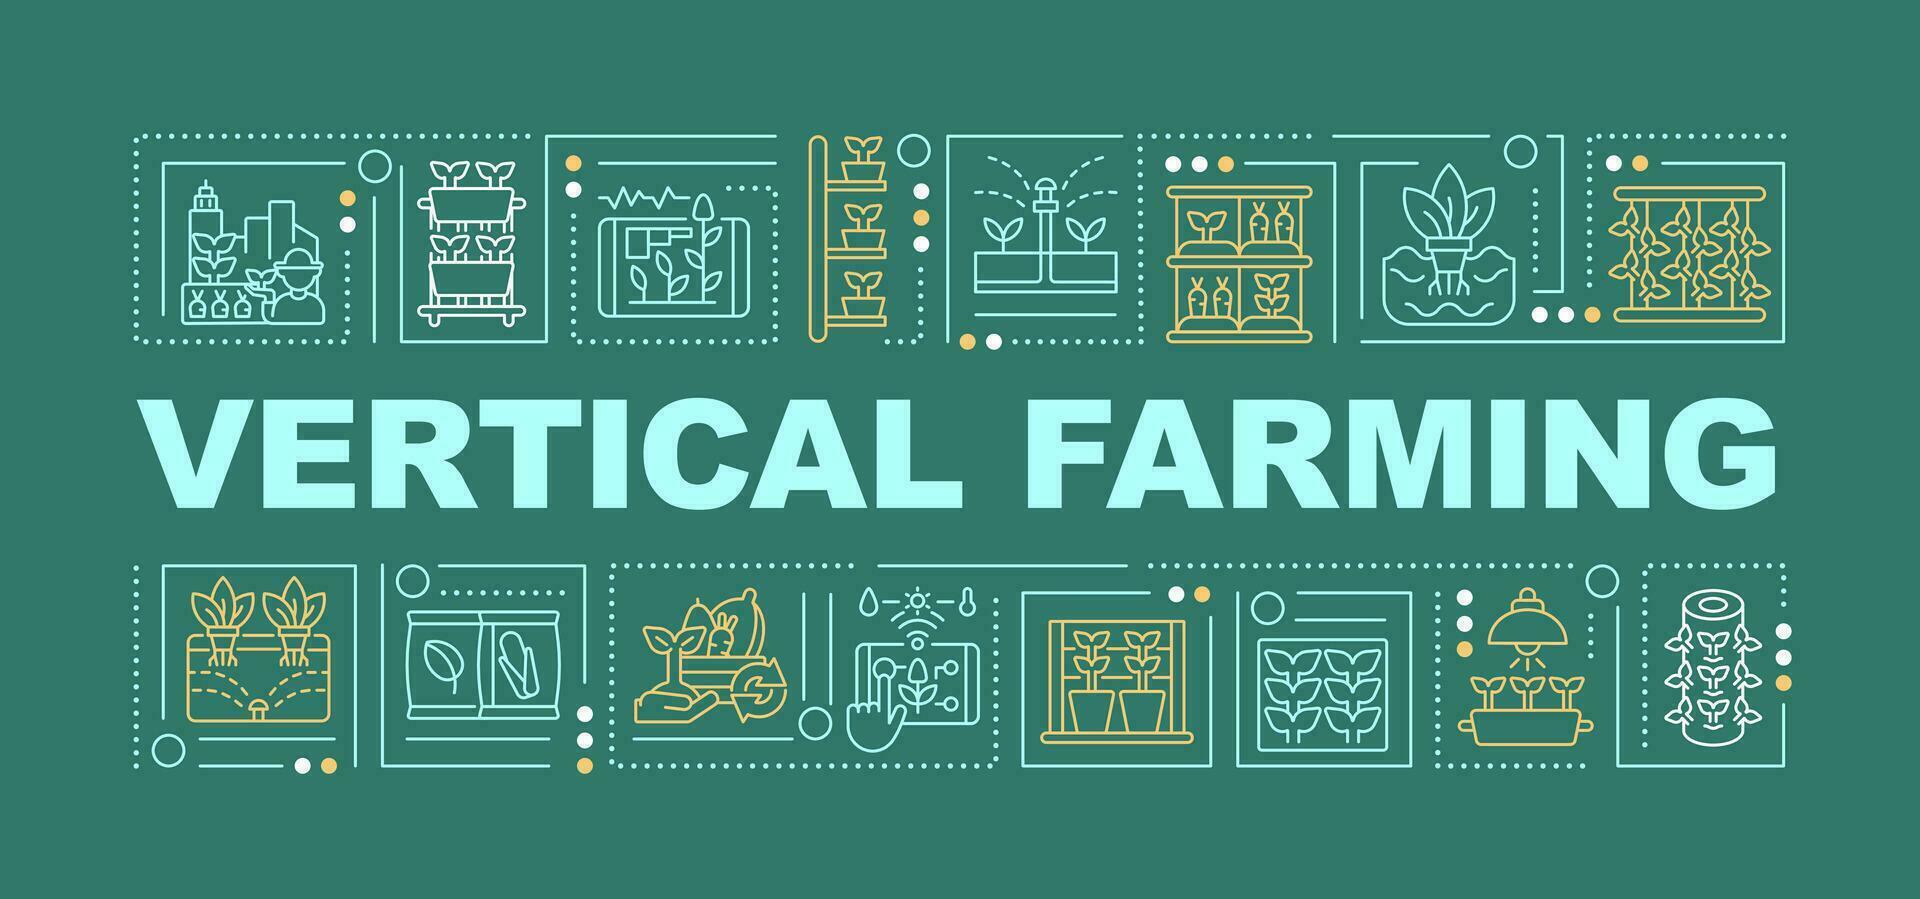 vertikal jordbruk text med olika ikoner på mörk grön enfärgad bakgrund, 2d vektor illustration.